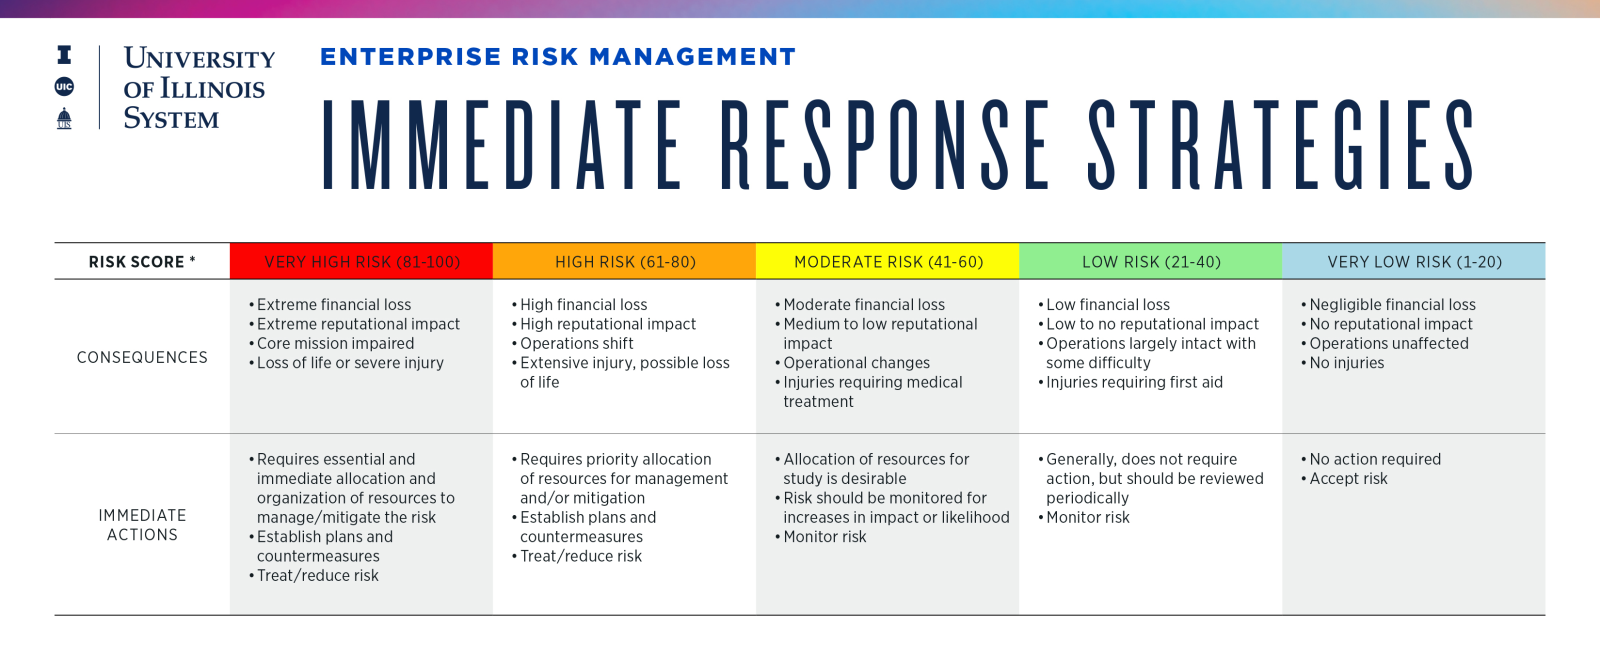 Immediate response strategies based on risk score